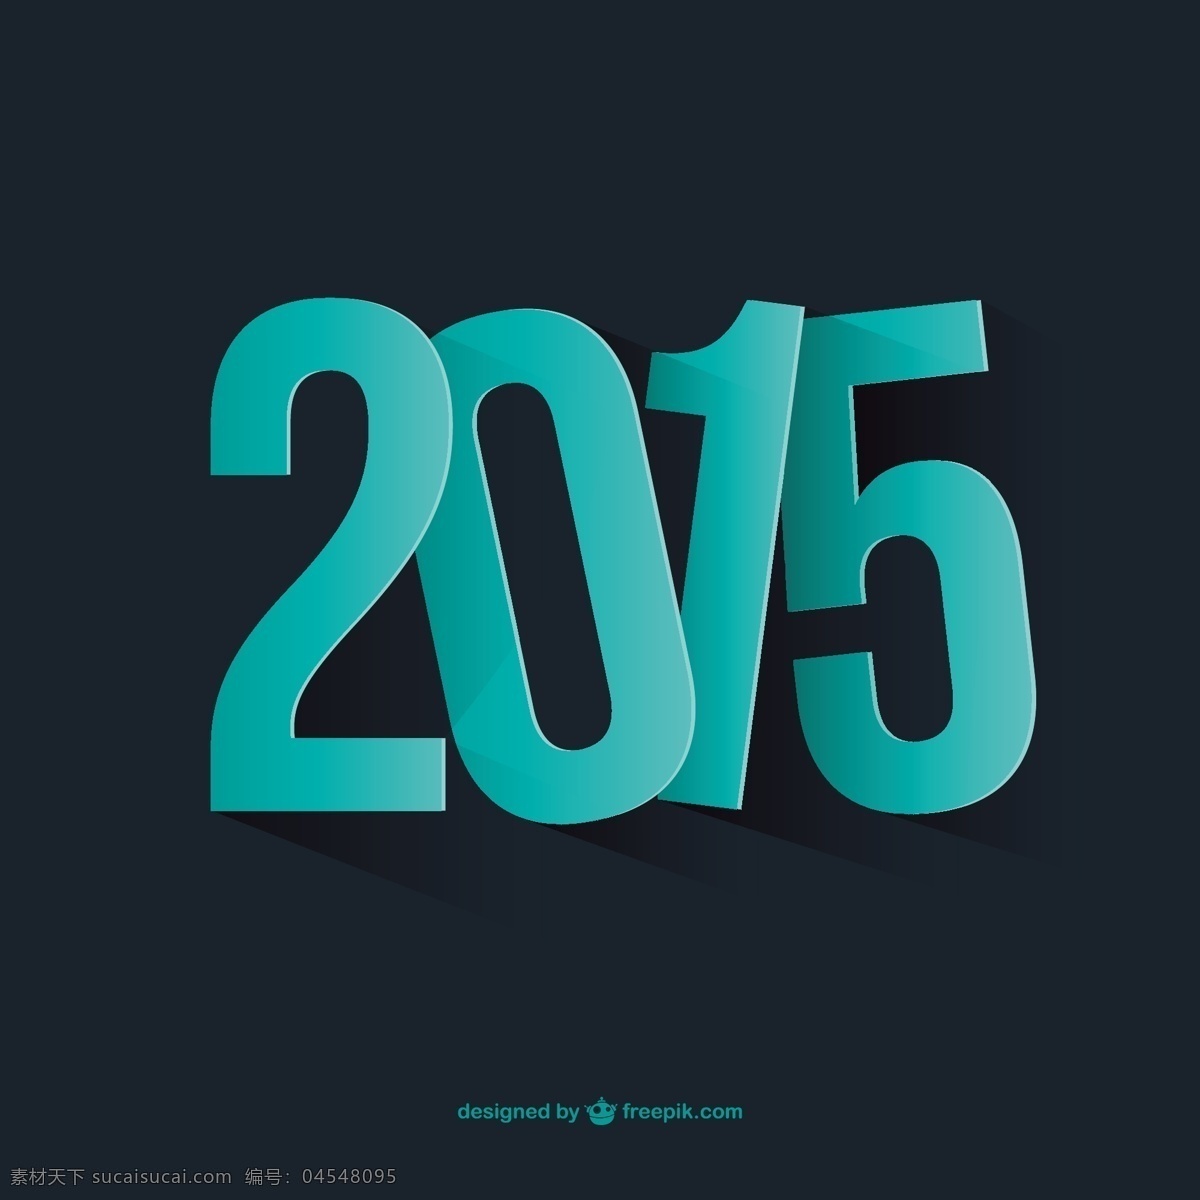 新 年 2015 背景 卡 新的一年 新年 下 新年贺卡 青色 天蓝色